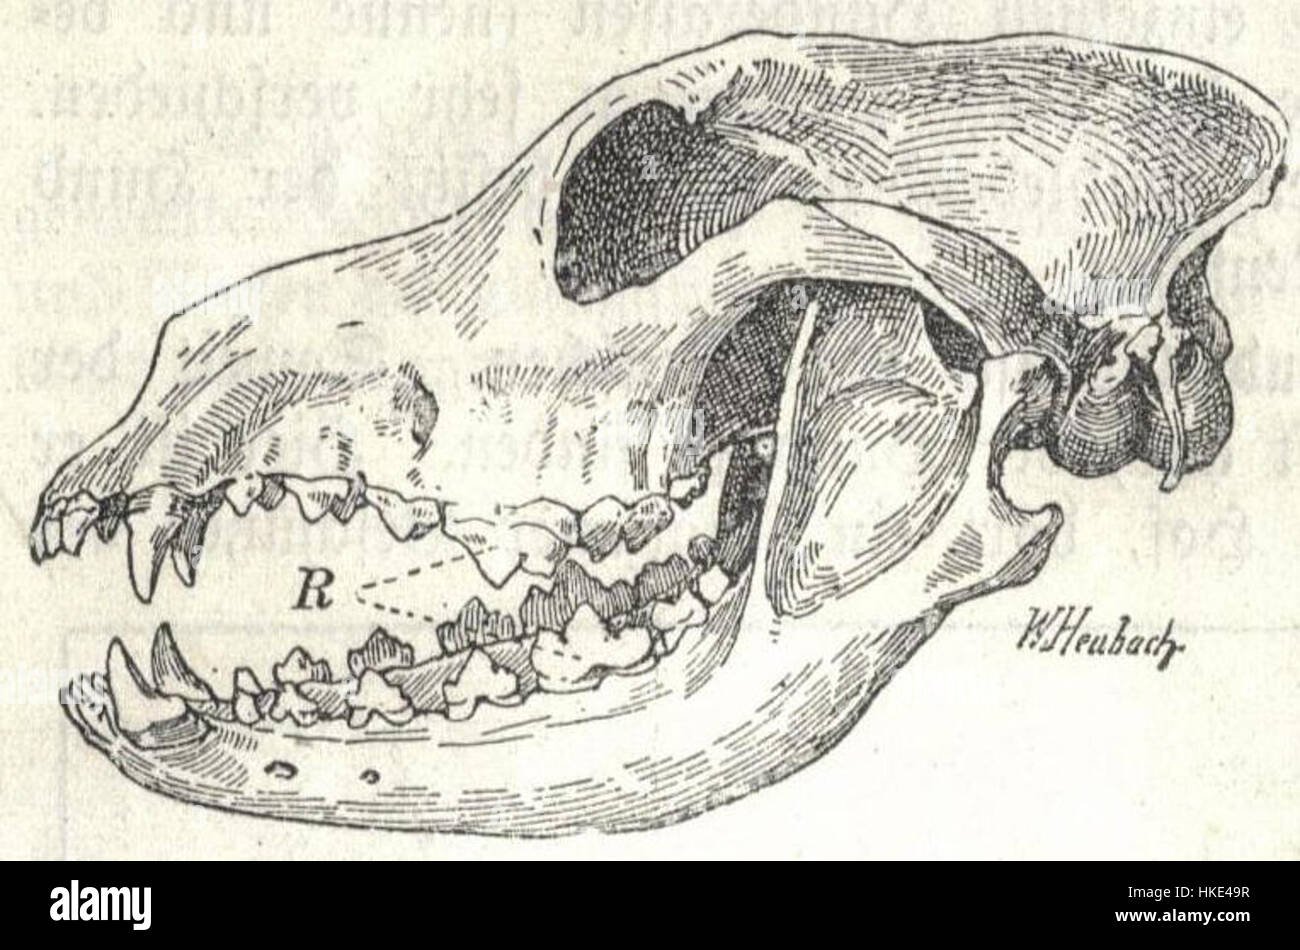 Сравните череп ящерицы и череп собаки. Сагиттальный распил черепа собаки. Кости черепа собаки. Строение черепа собаки. Лицевой череп собаки.